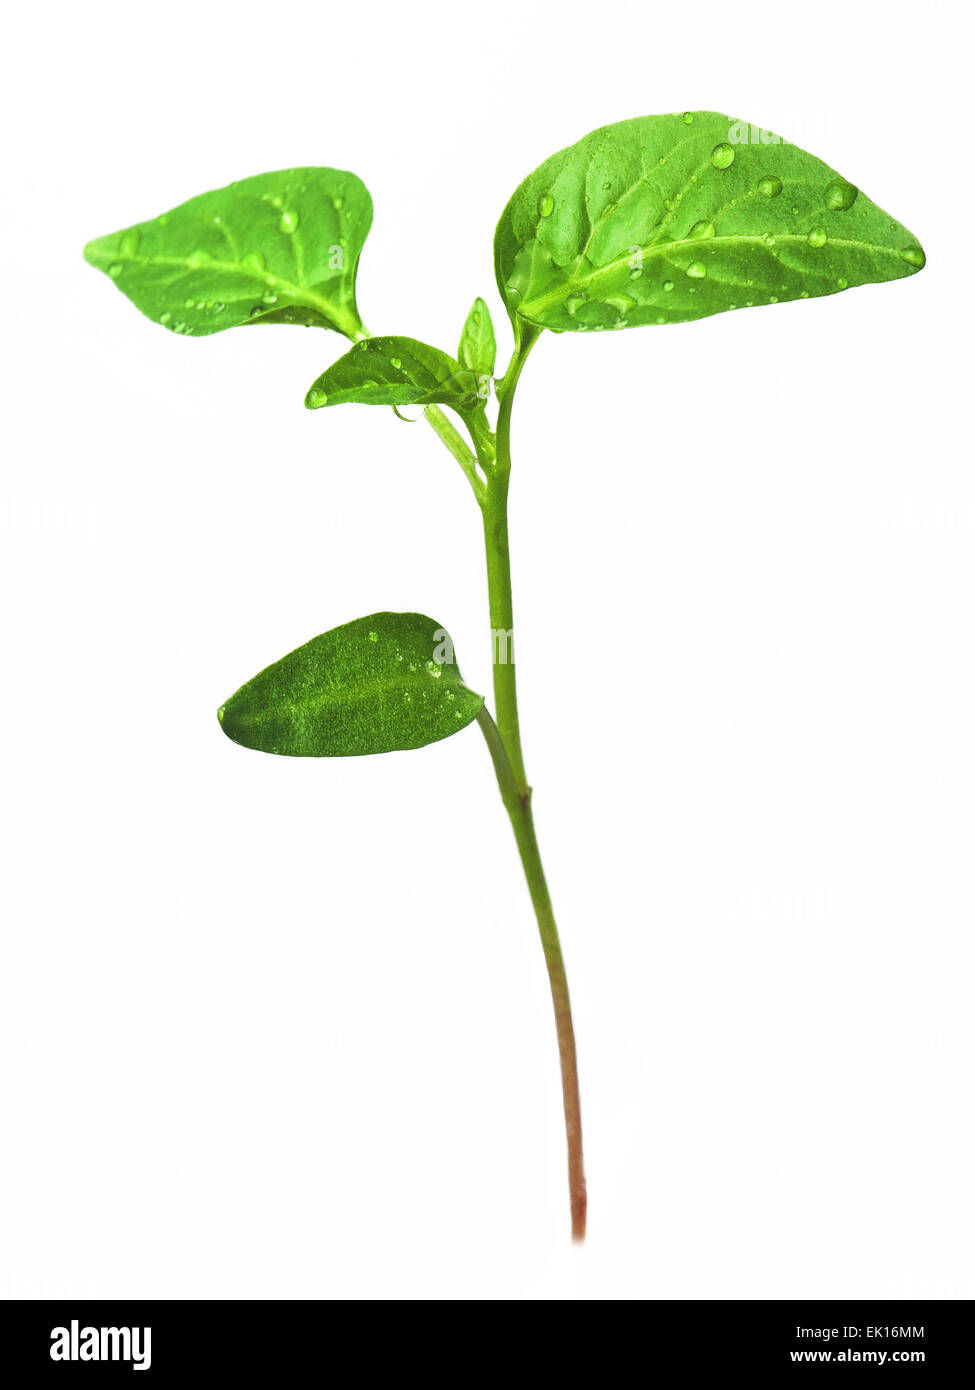 Les choux verts de plus en plus de graines. Le poivre. Close-up of green plant growing out of sol isolé sur fond blanc Banque D'Images